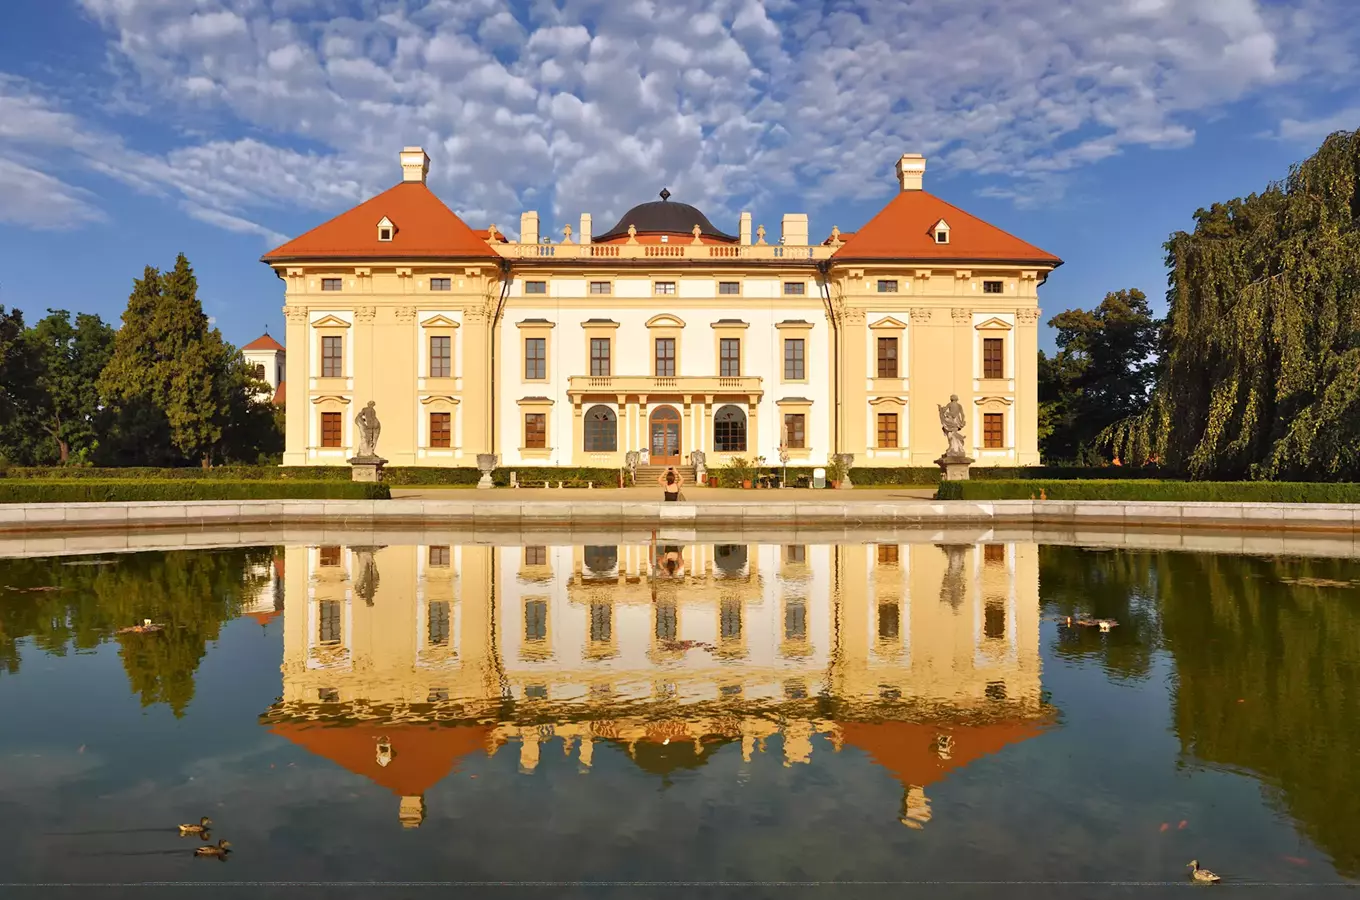 Kounicové – šlechtický rod s rezidencí ve Slavkově u Brna 